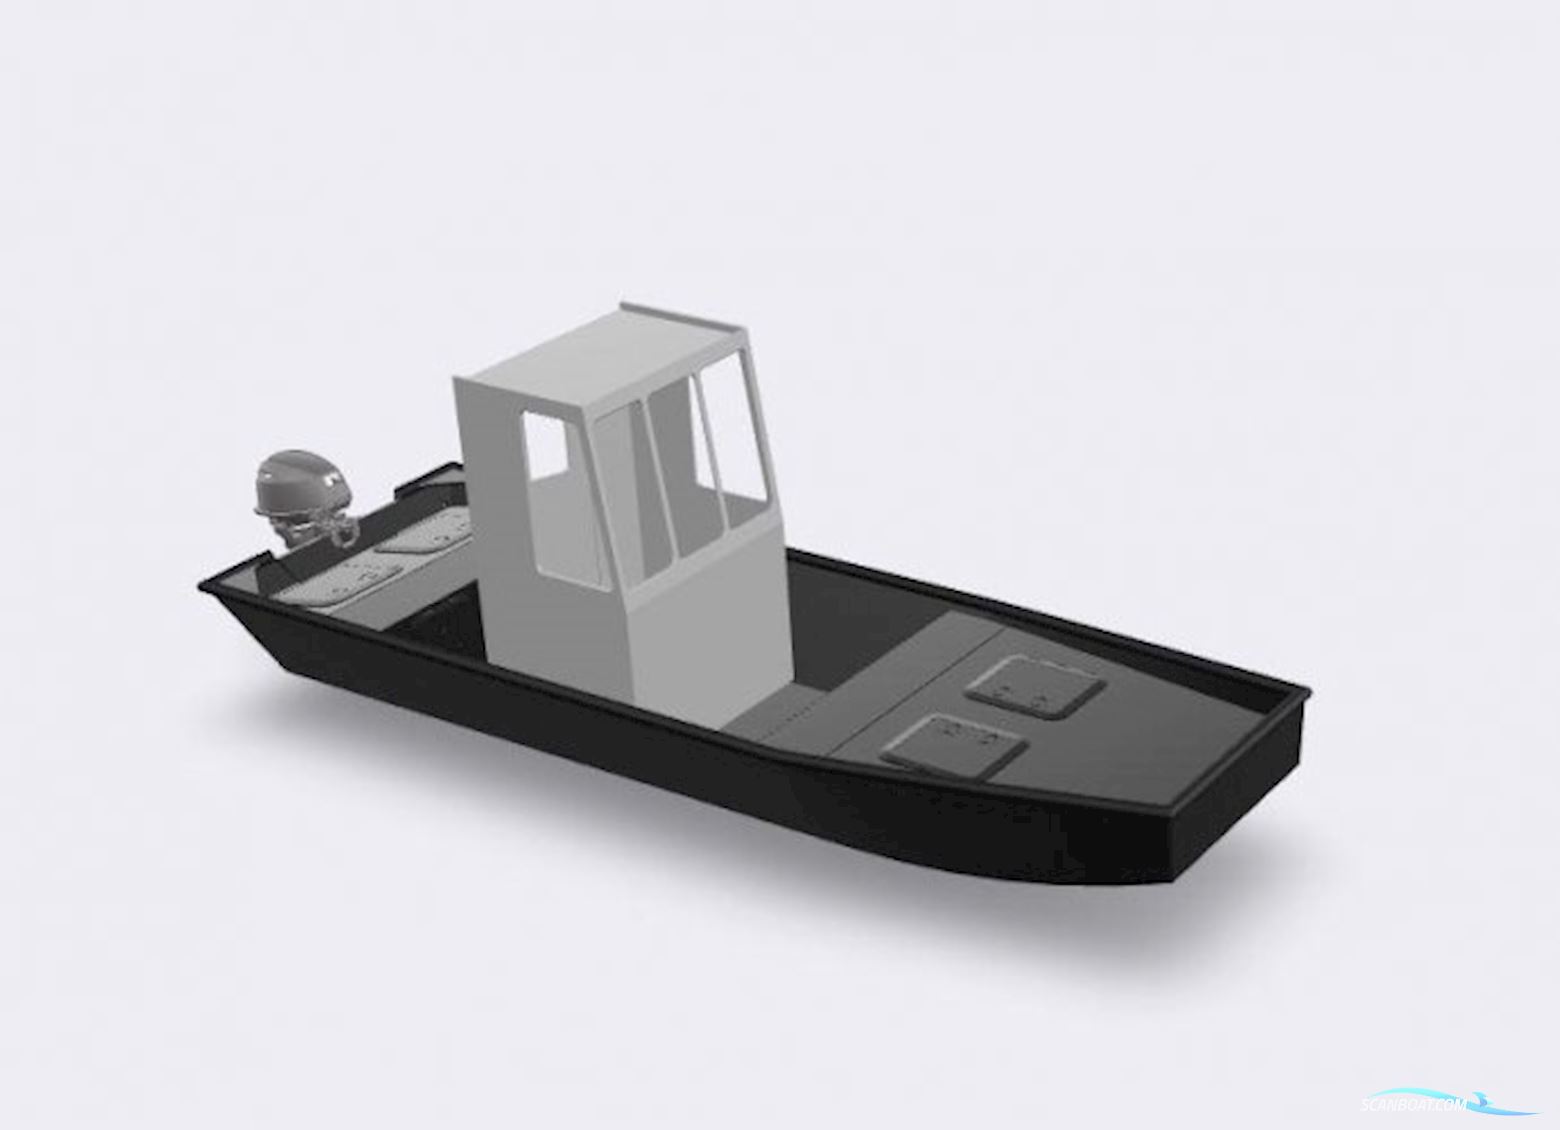 Black Workboats 500 Pro Cabin Work ship 2023, with Suzuki / Honda / Elektrisch engine, The Netherlands